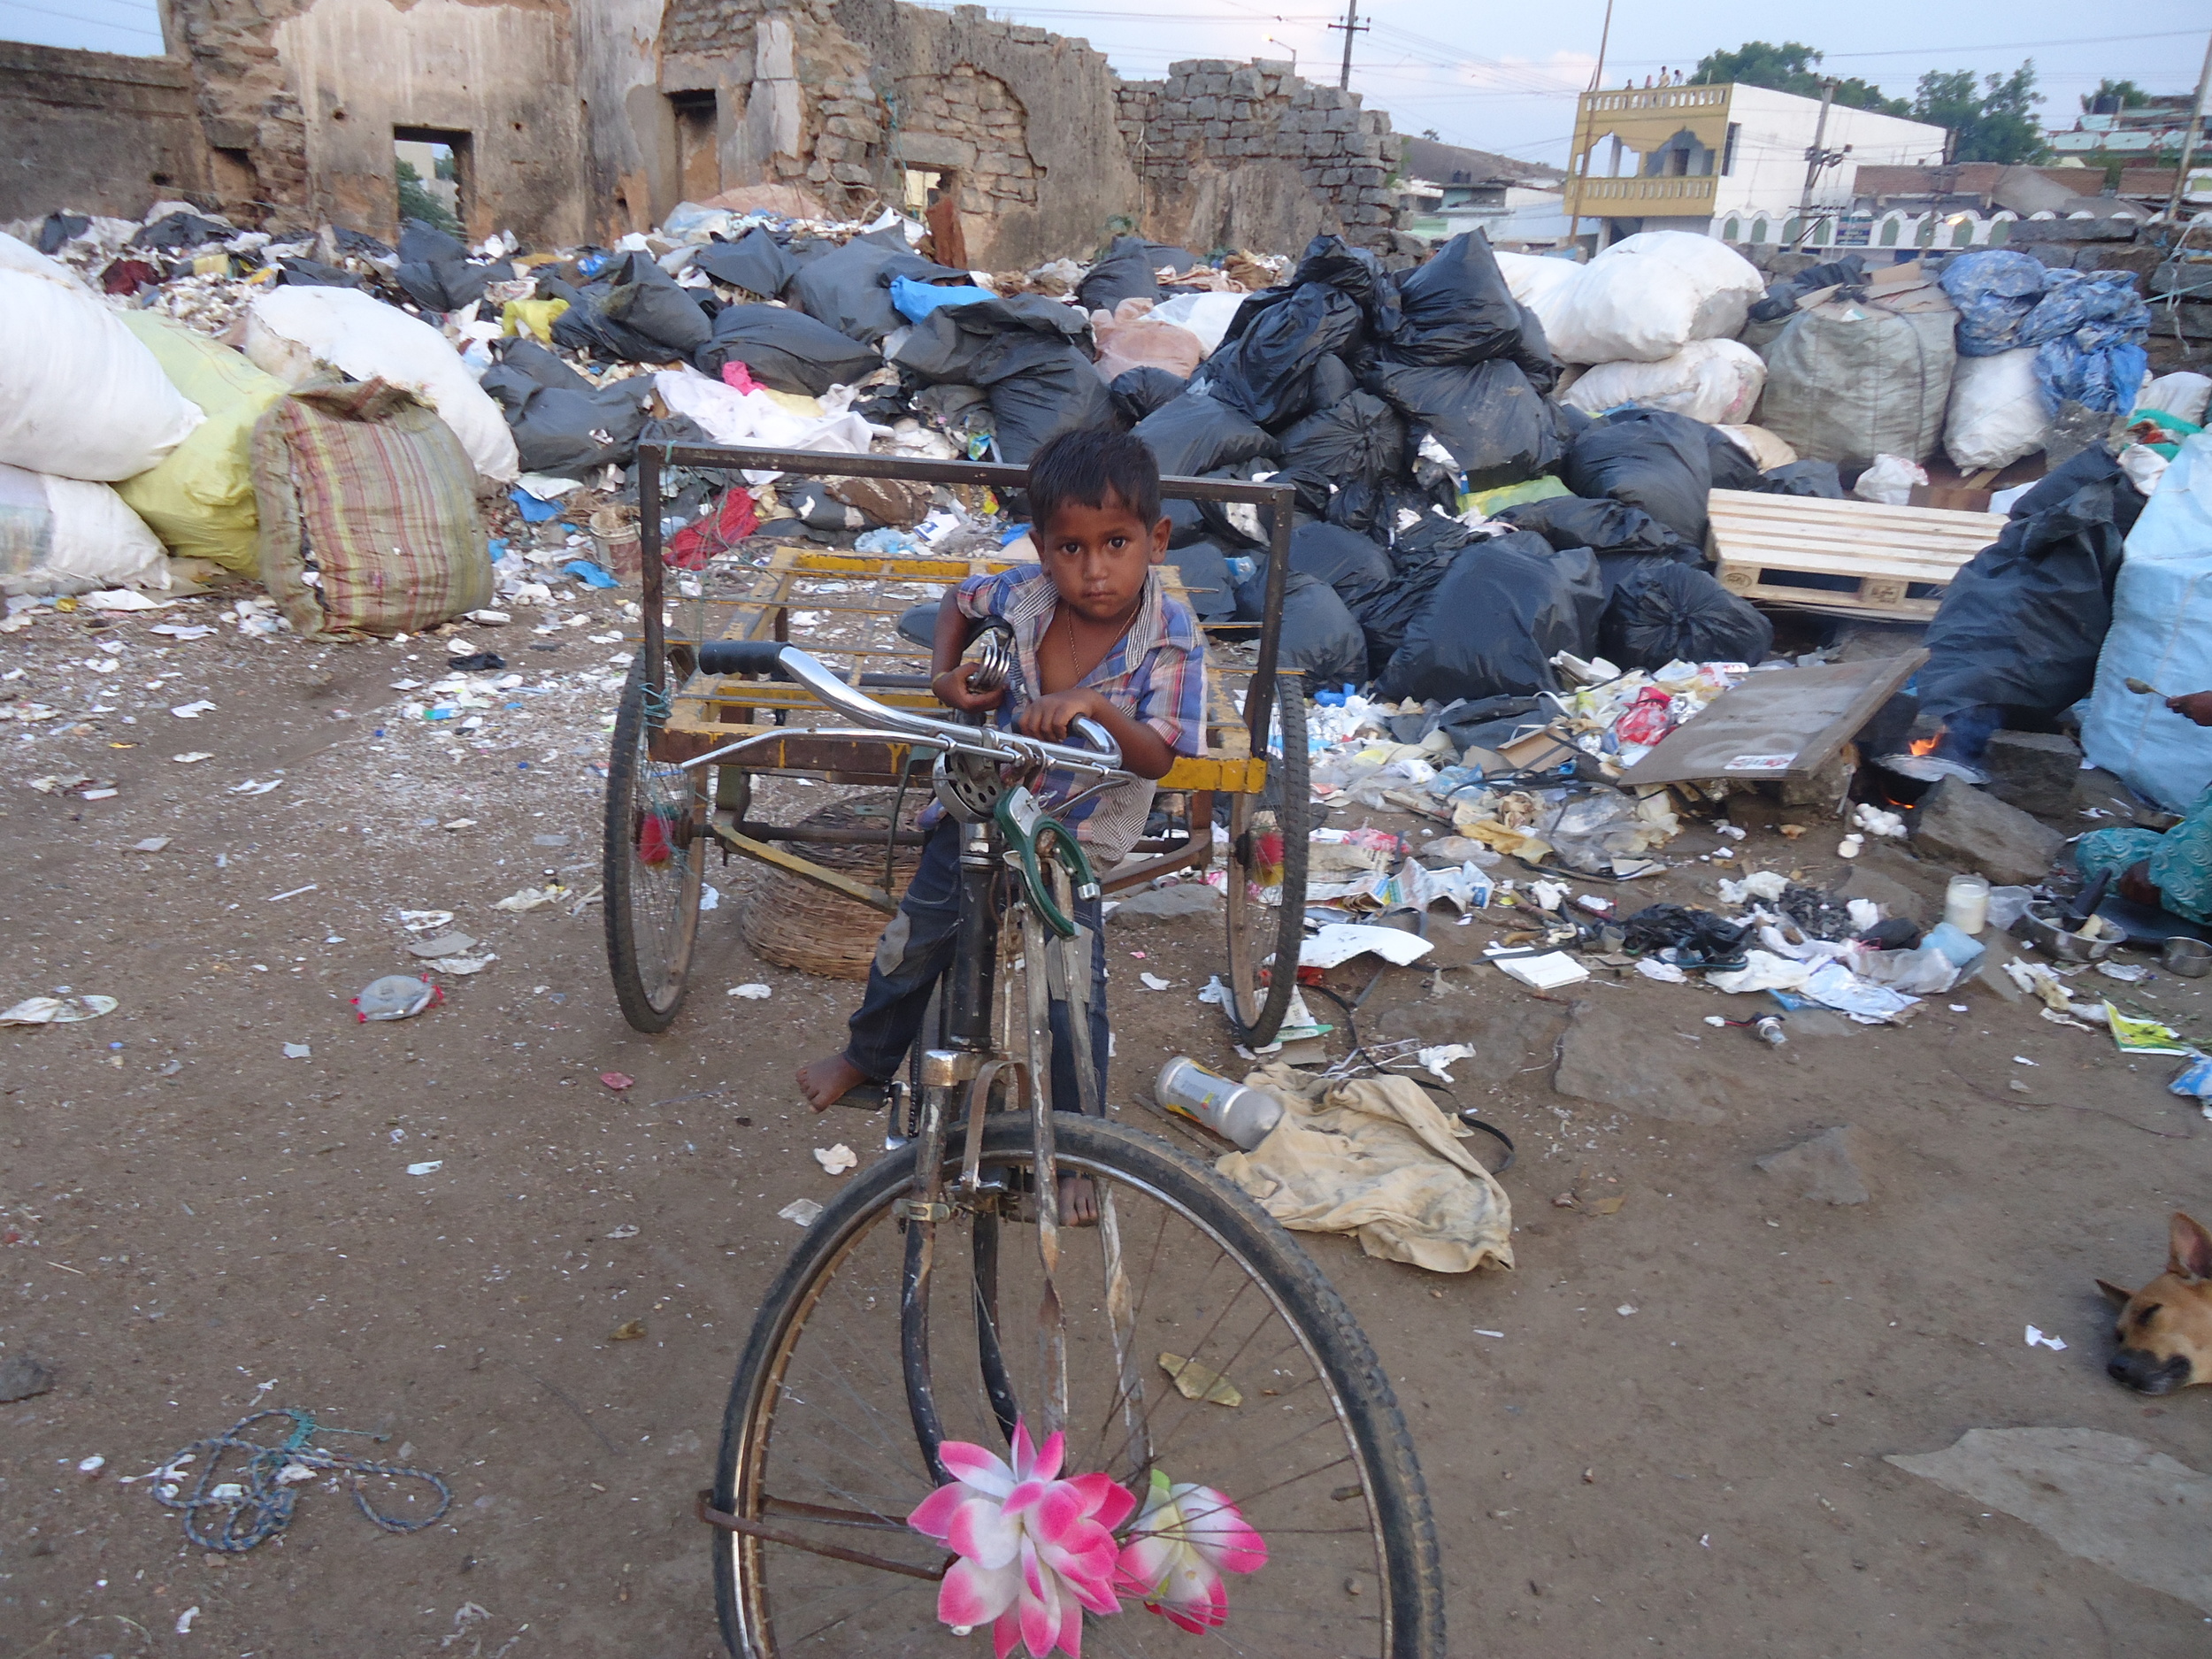 Boy in Garbage Dump_DSC09506.JPG